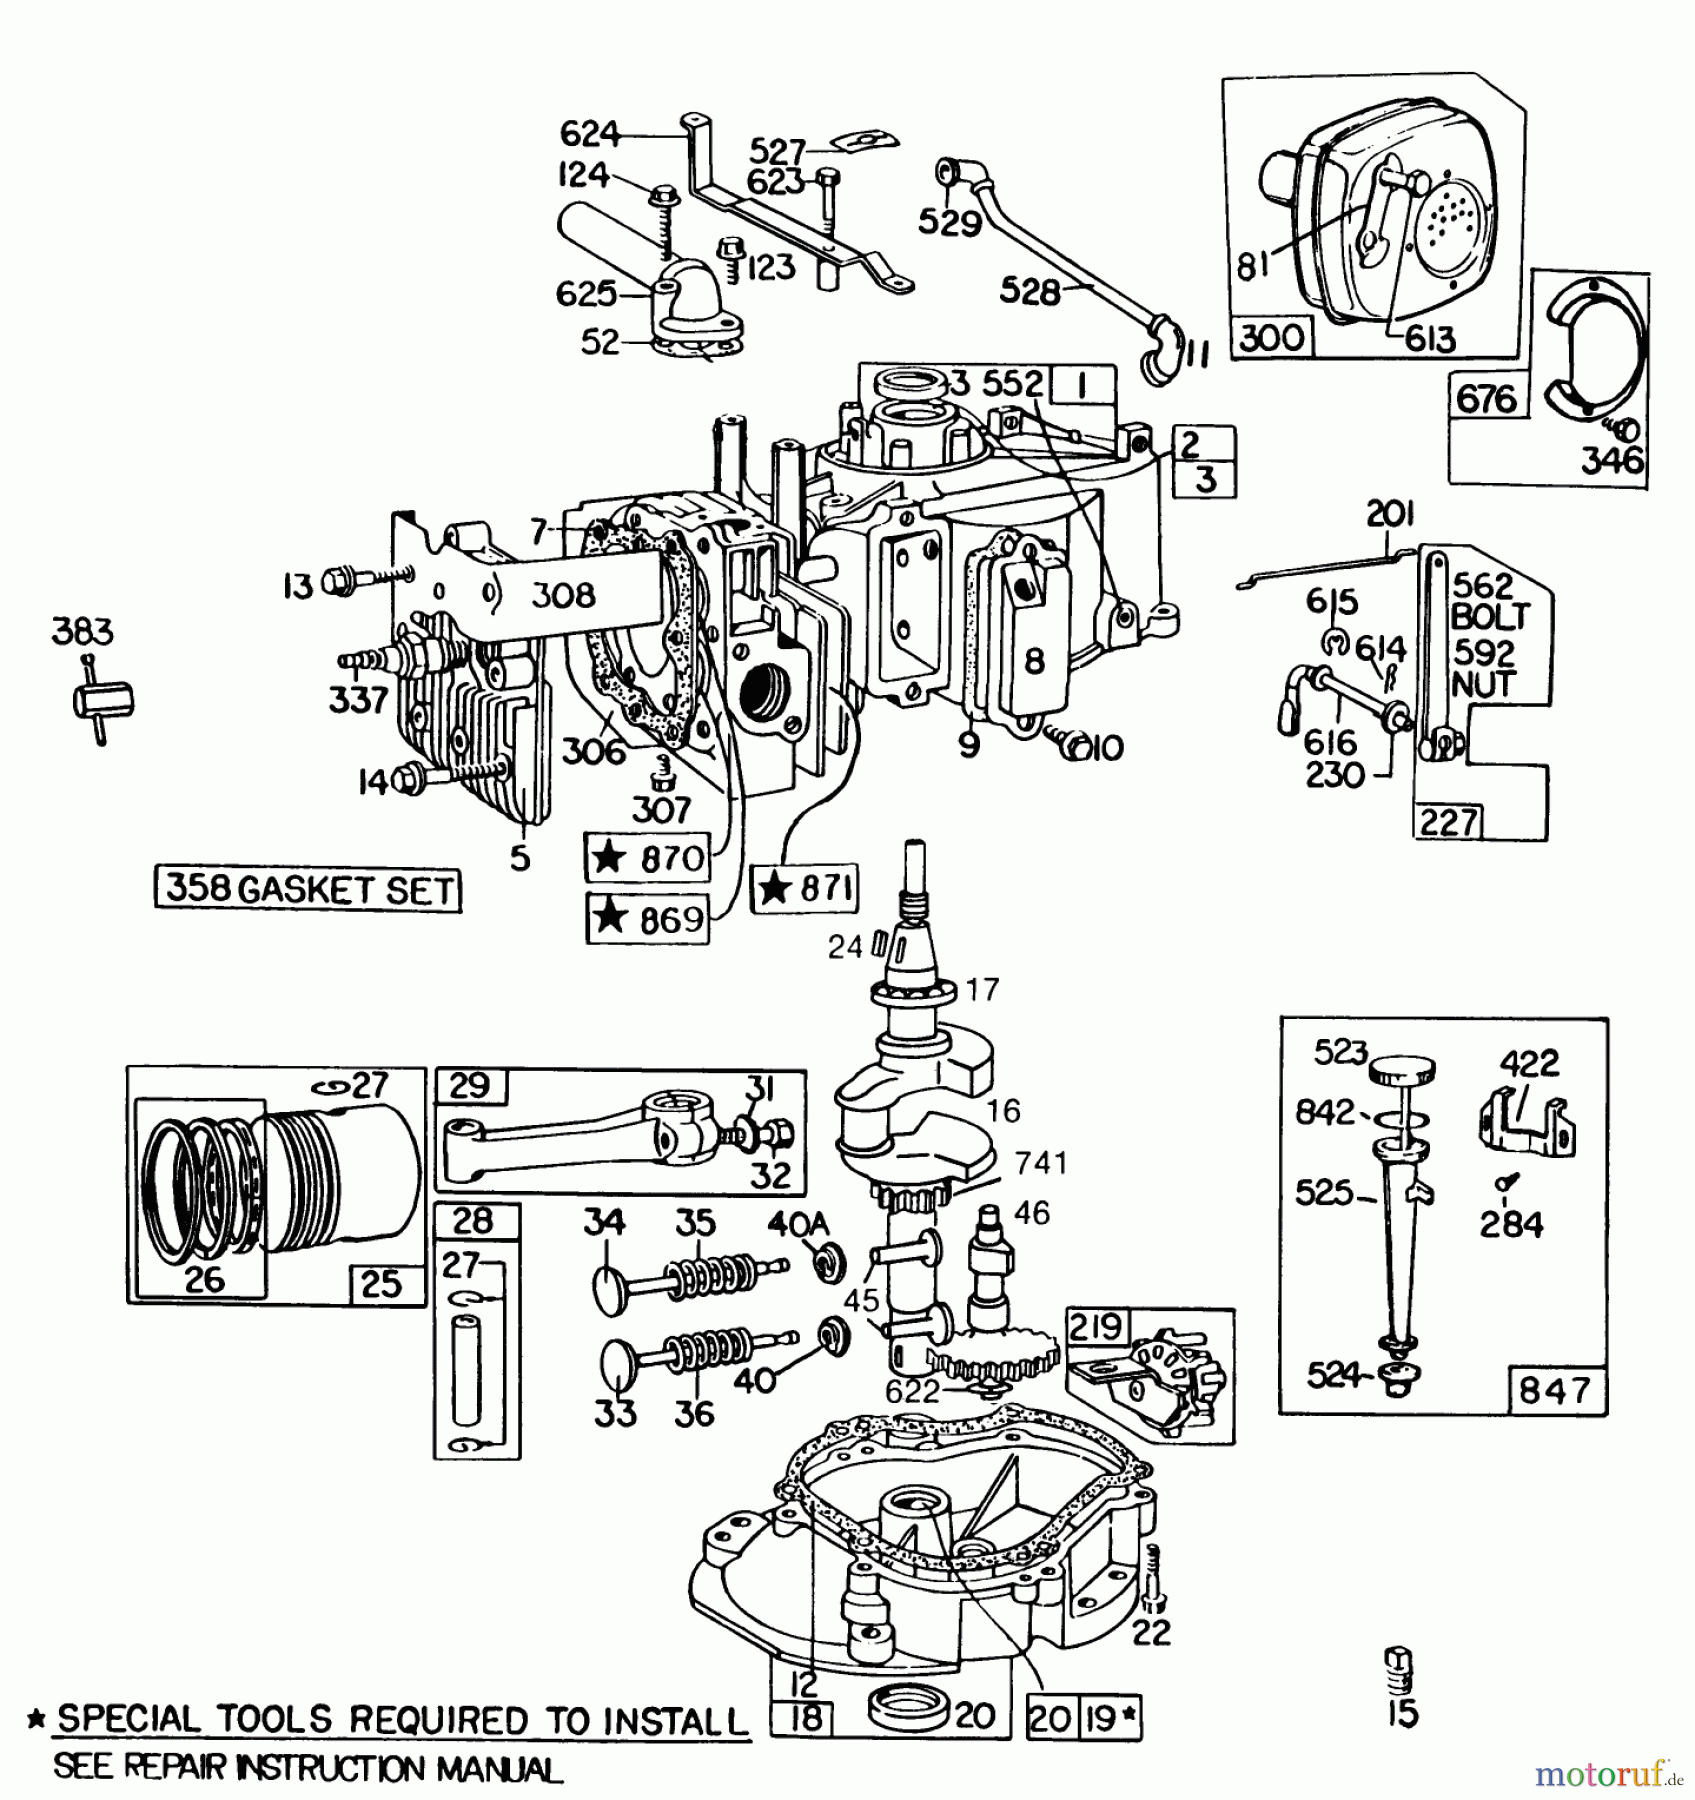  Toro Neu Mowers, Walk-Behind Seite 2 22020 - Toro Lawnmower, 1986 (6000001-6999999) ENGINE BRIGGS & STRATTON MODEL 131922-0163-01 #1